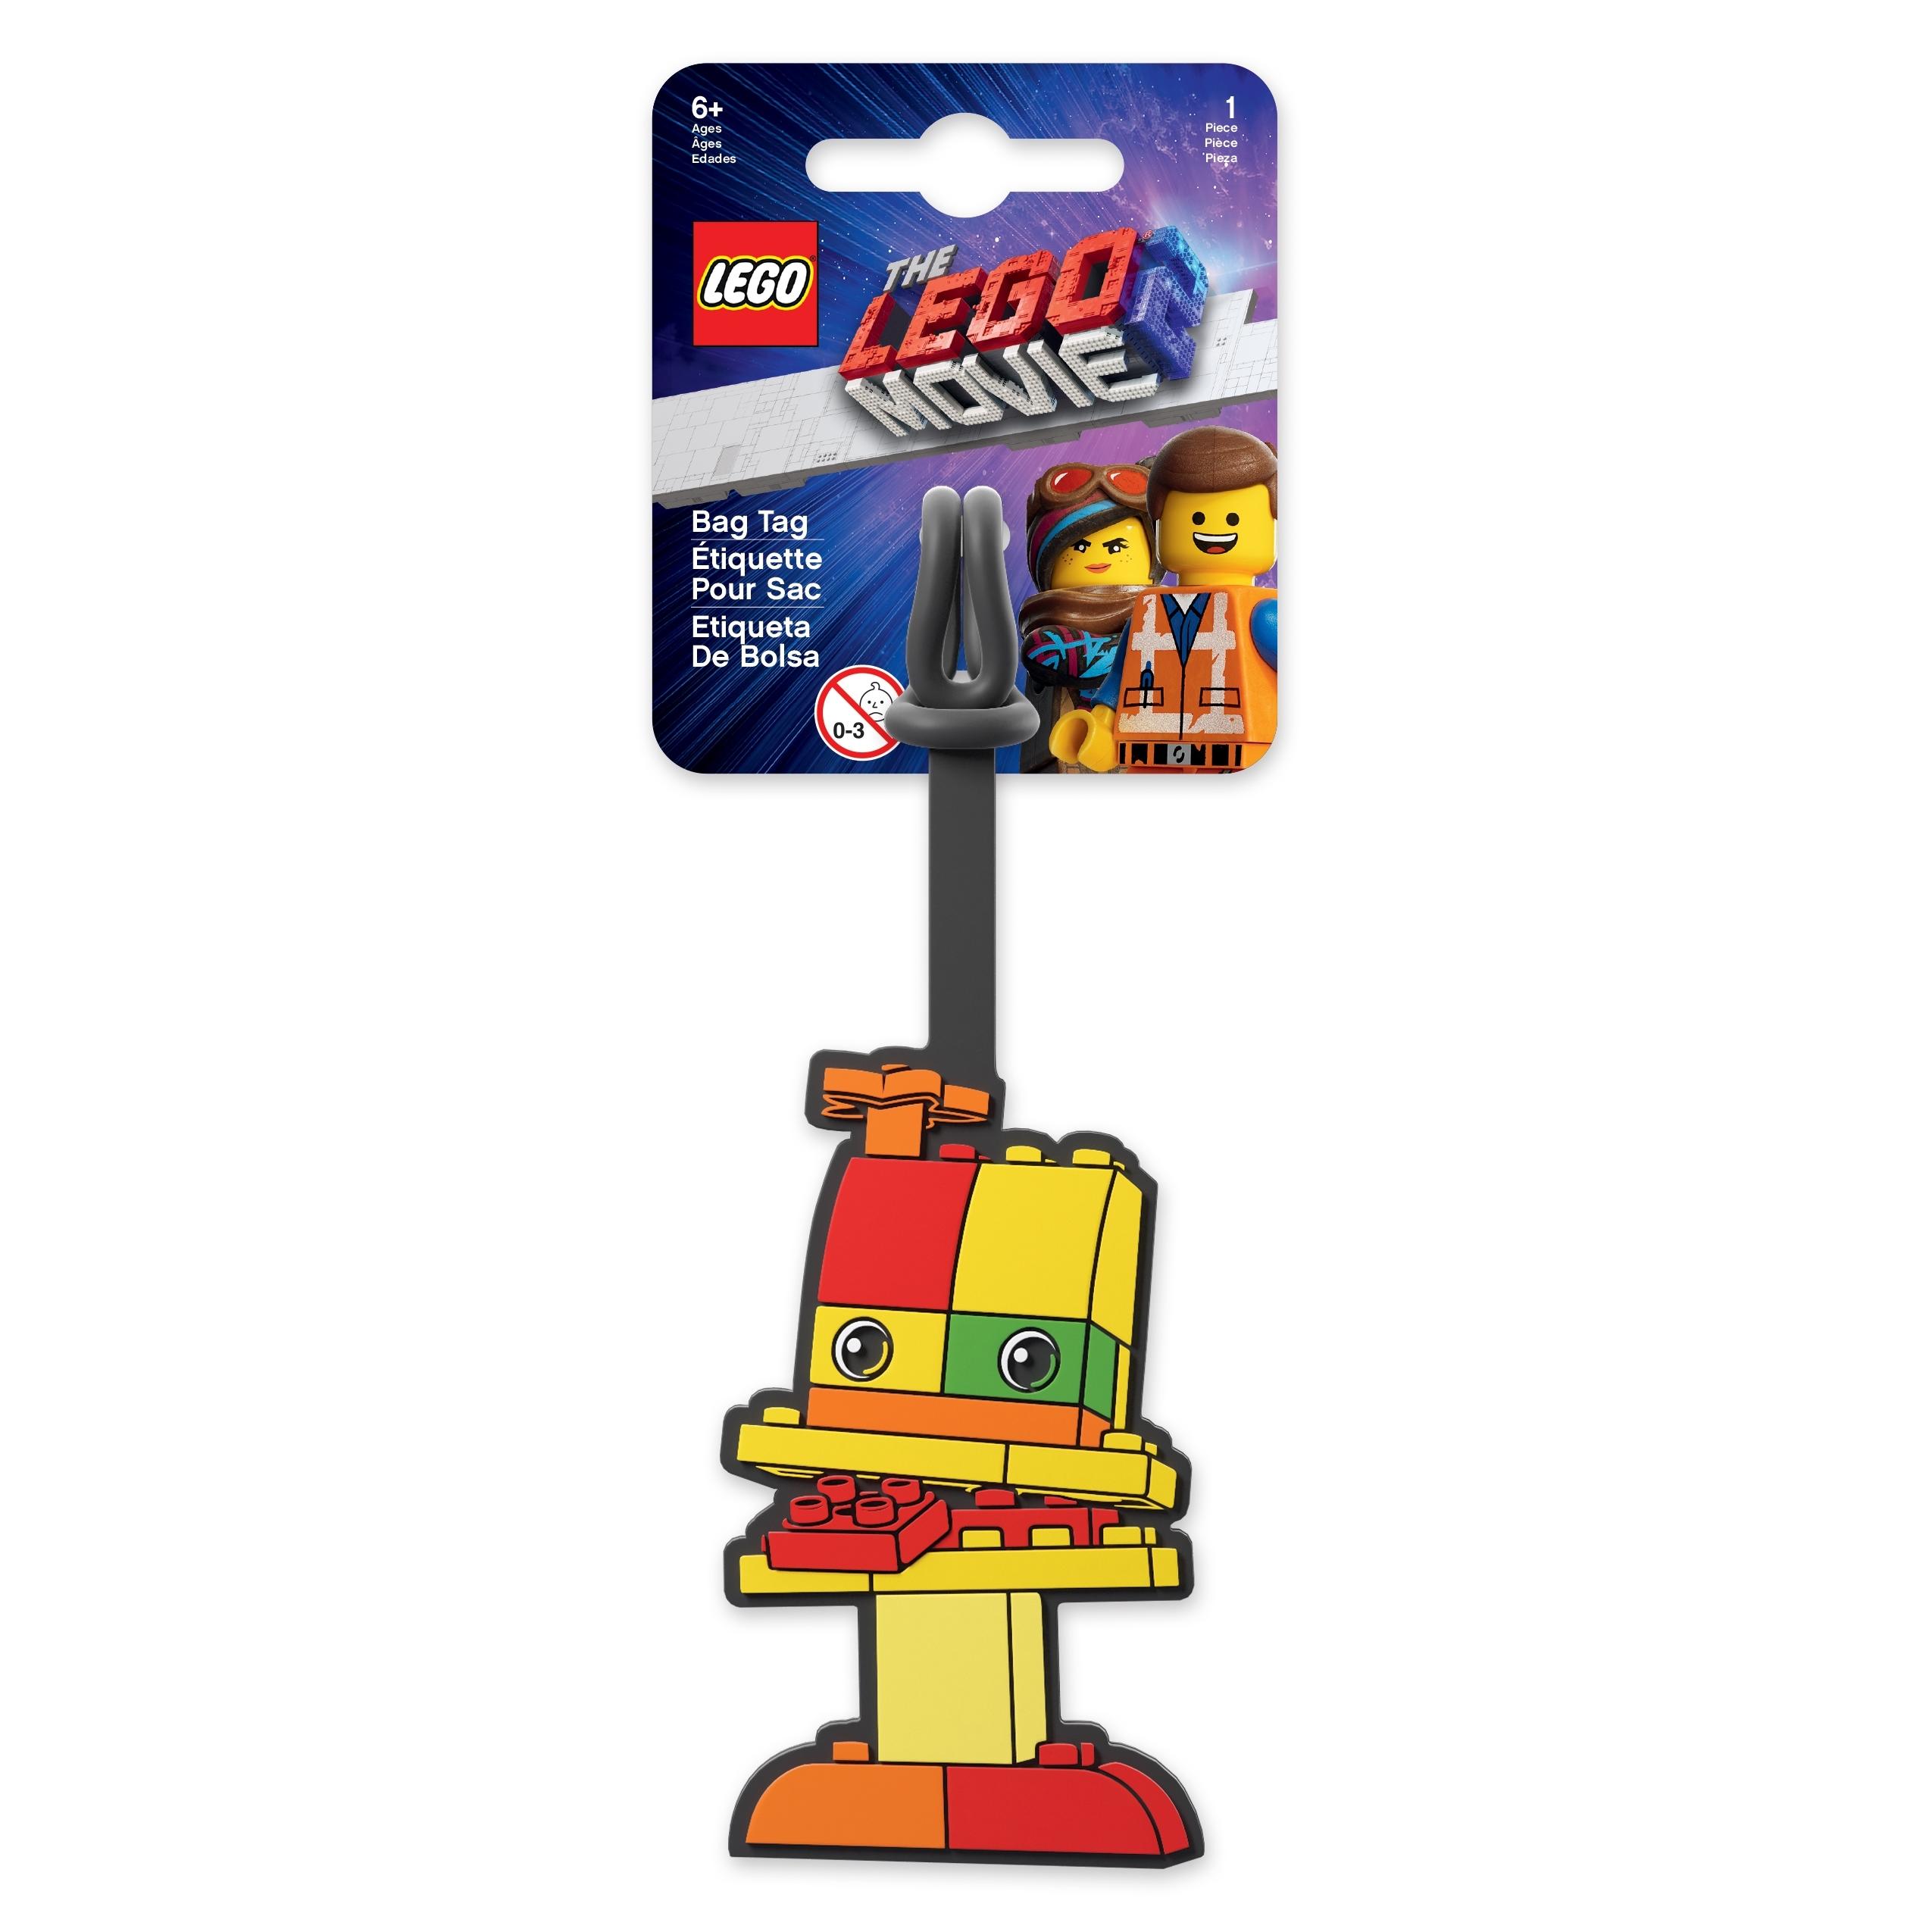 Lego Movie 2 Bag Tag3